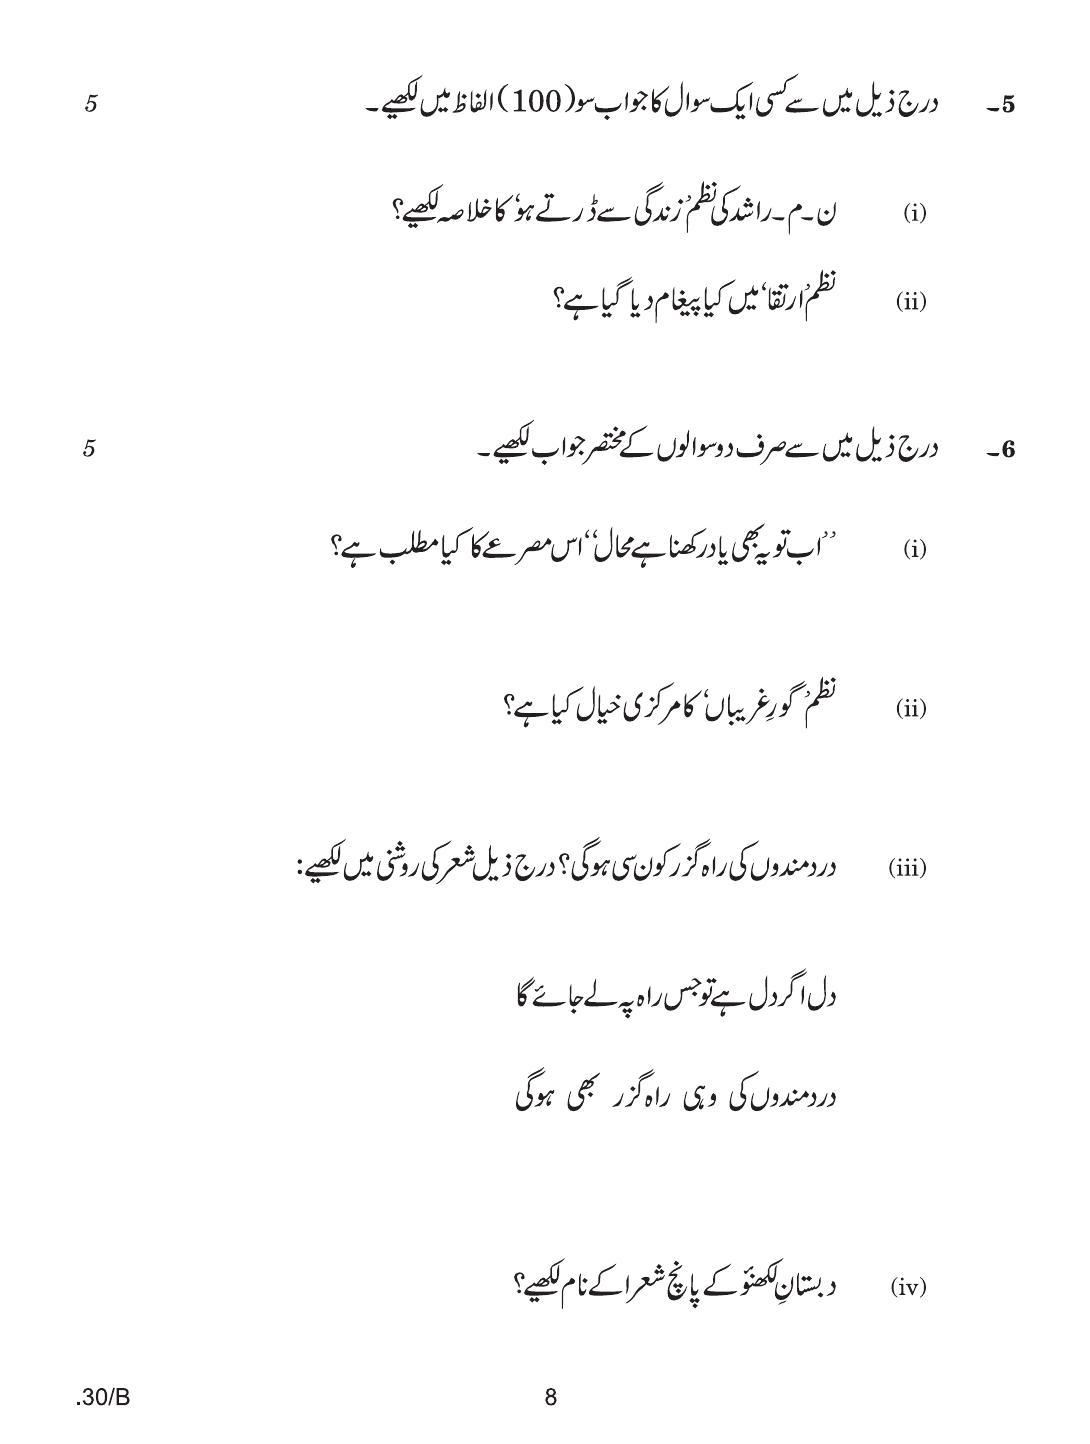 CBSE Class 12 Urdu Elective 2020 Compartment Question Paper - Page 8